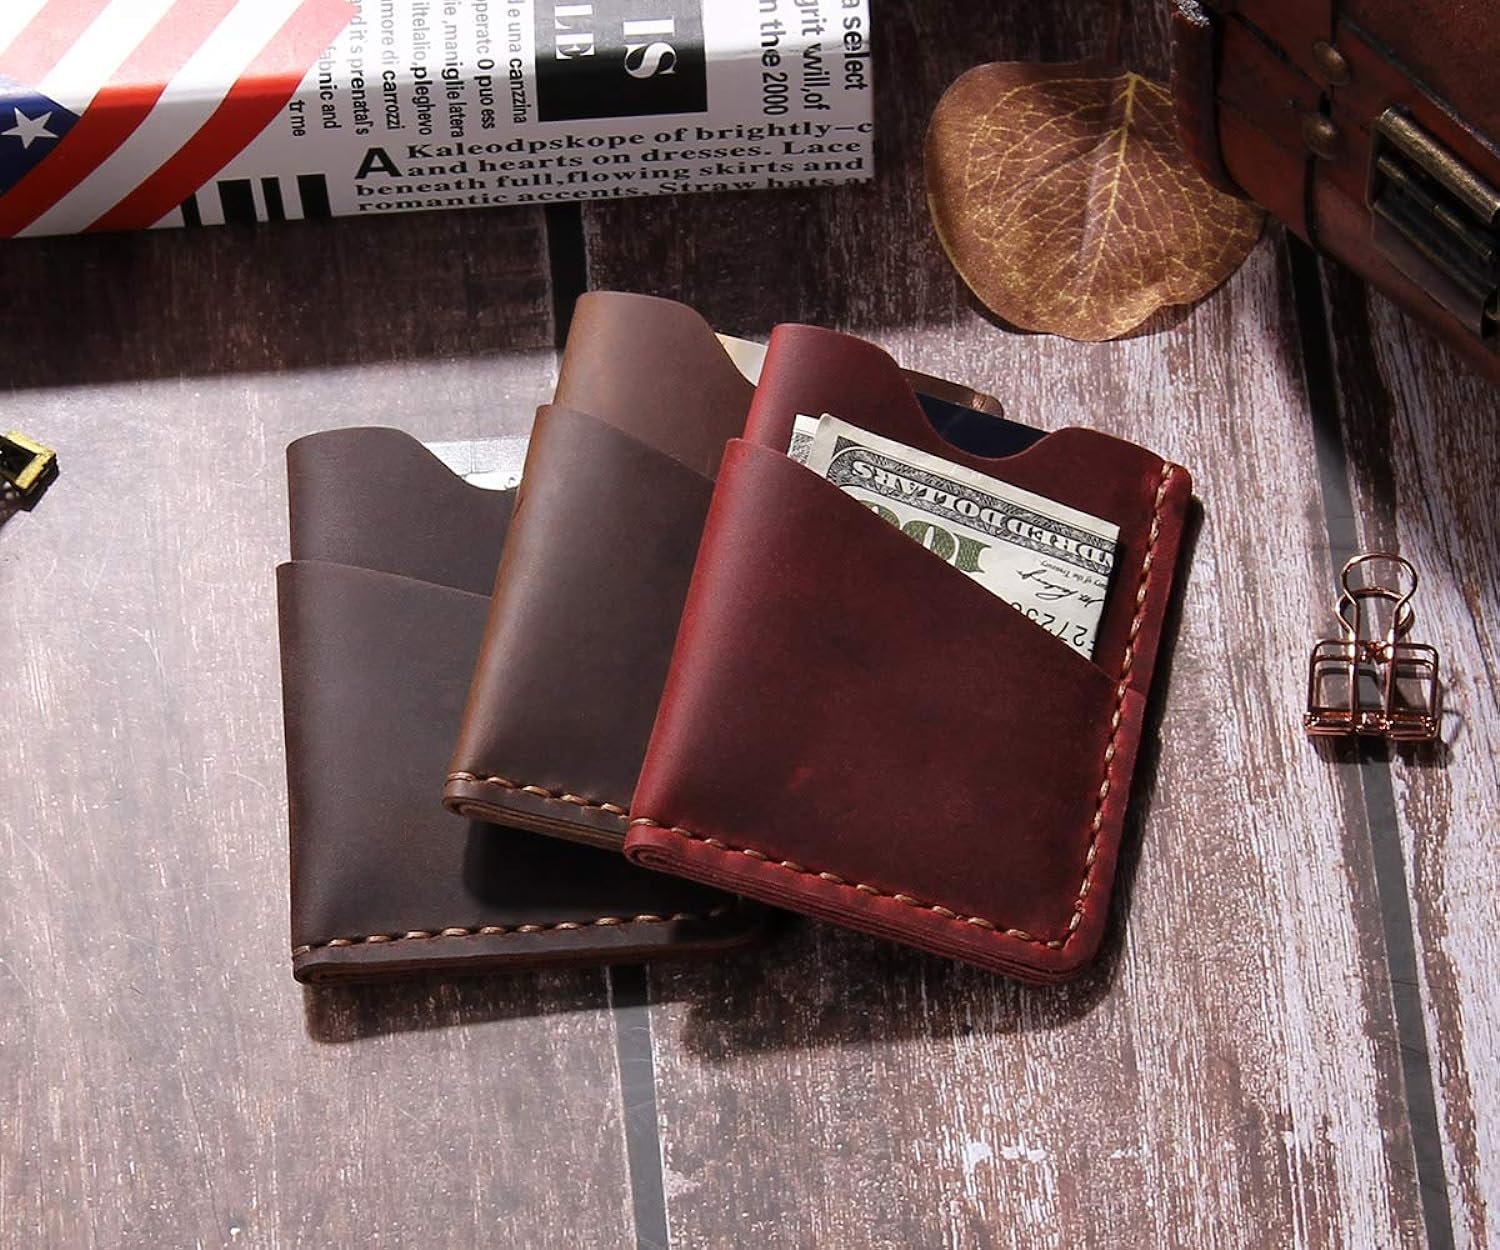 Robrasim Front Pocket Slim Wallet Review